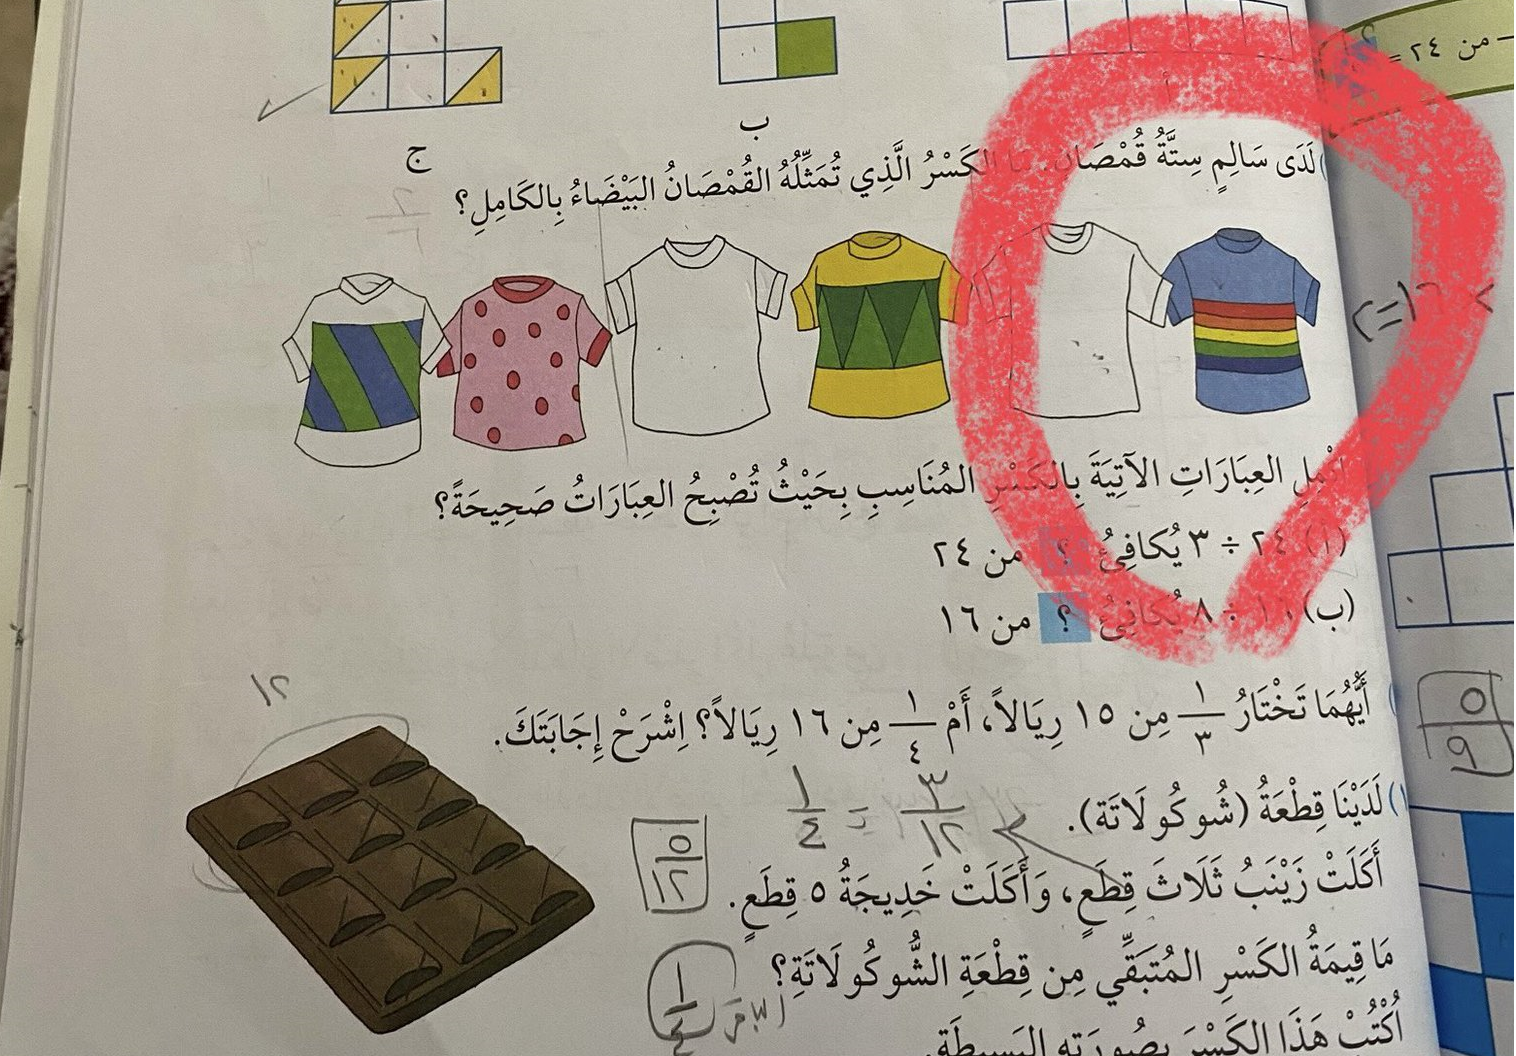 صورة في كتاب مدرسي تثير حفيظة العمانيين.. ما علاقة “علم المثليين”؟